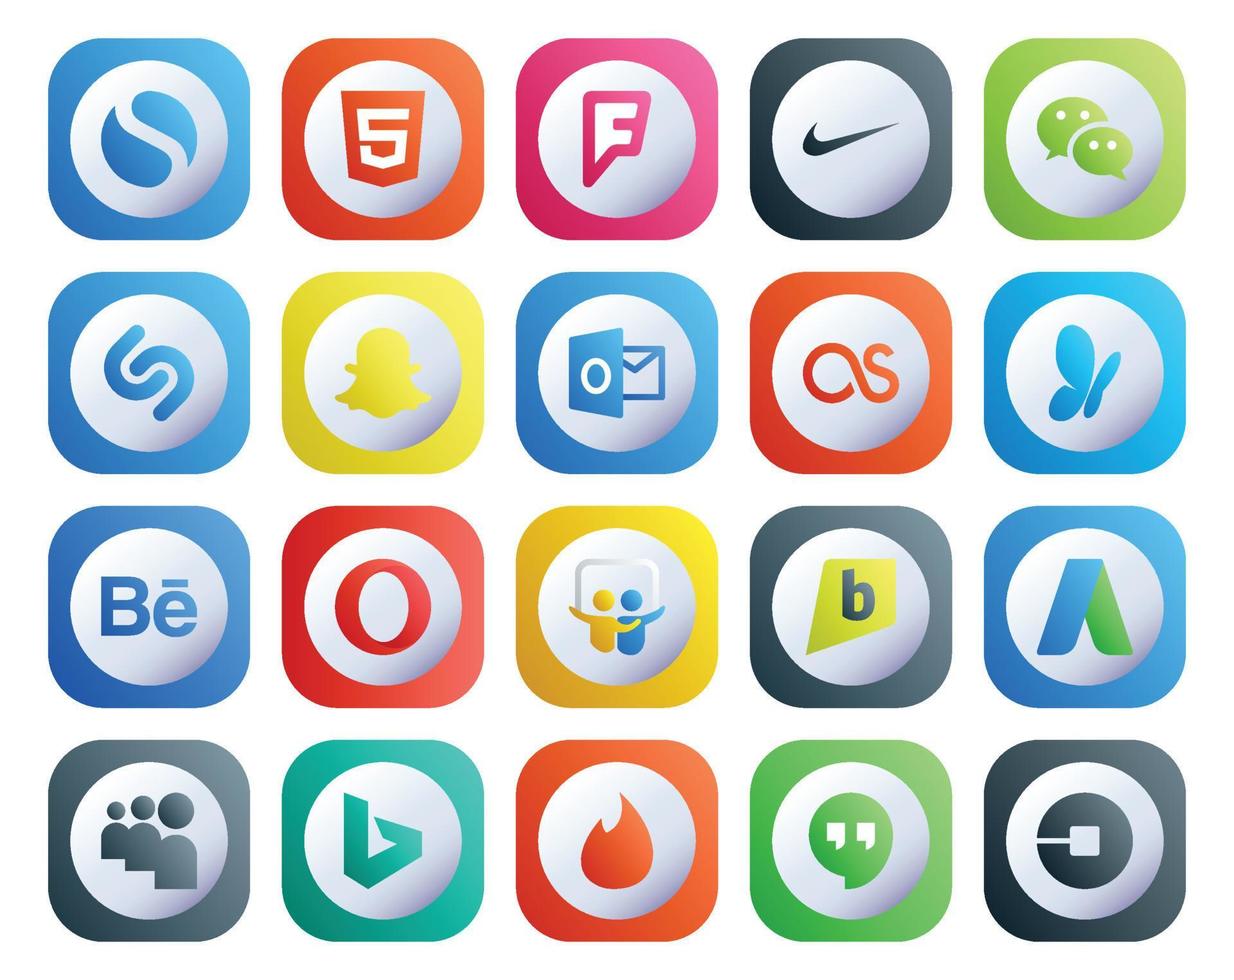 20 Symbolpakete für soziale Medien, einschließlich Bing Adwords Outlook Brightkite Opera vektor